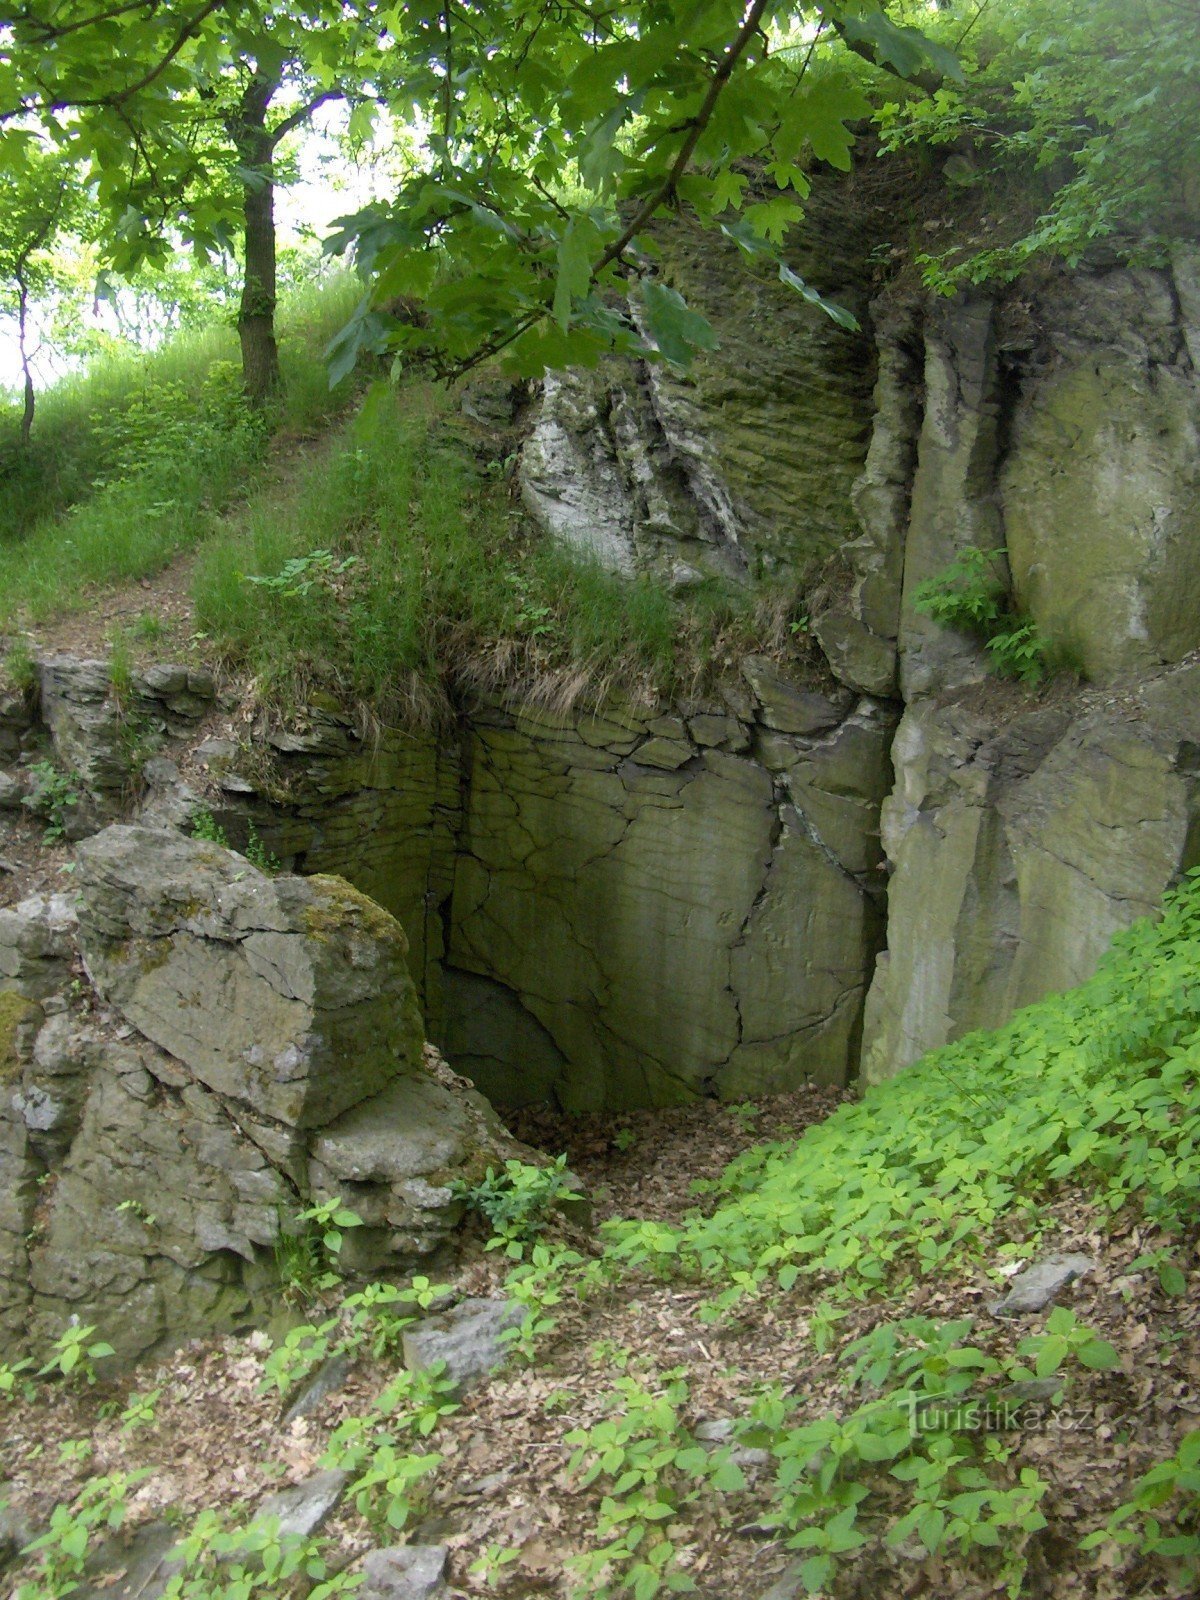 Las ruinas del castillo de Litýš